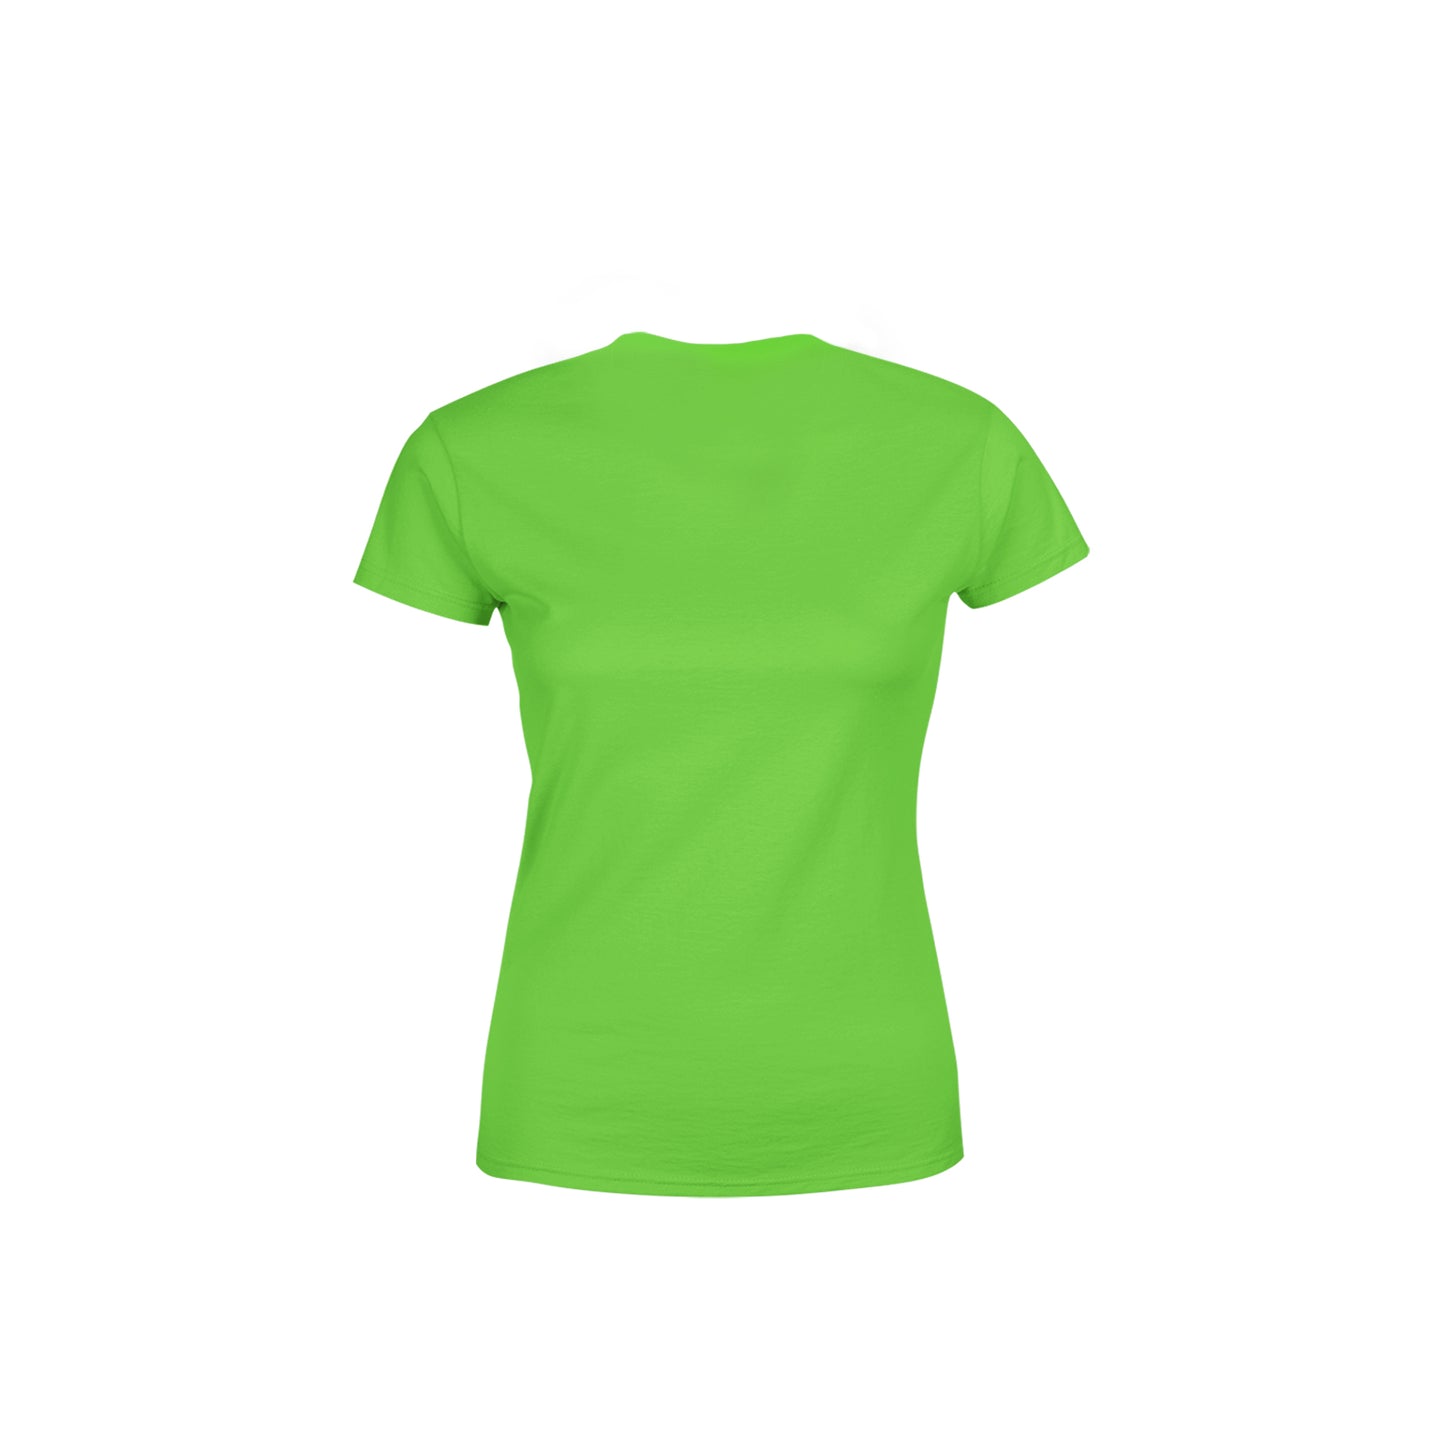 78 Number Women's T-Shirt (Liril Green)